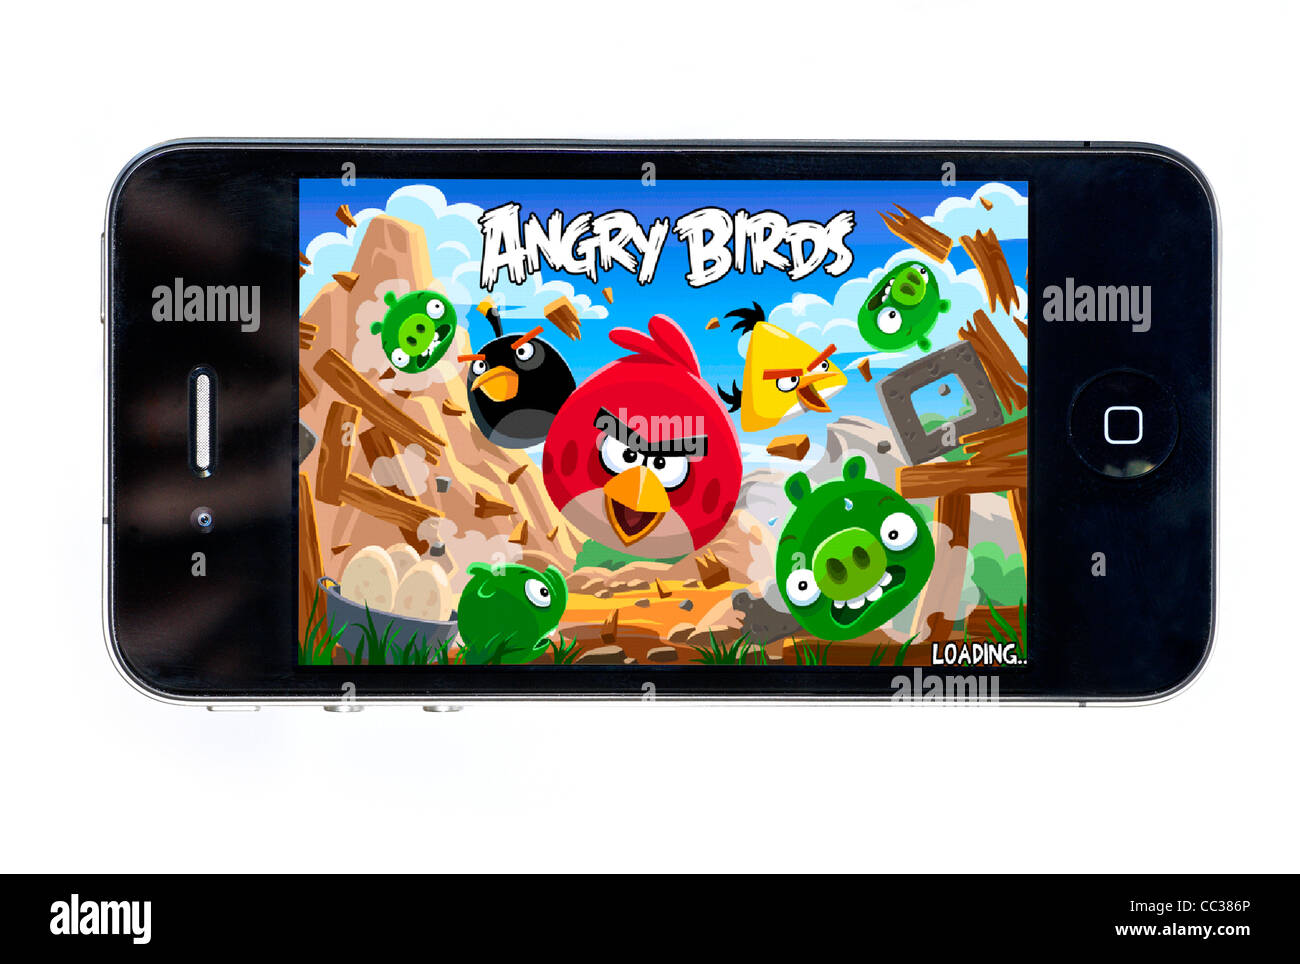 El tremendamente popular juego Angry Birds en un Apple iPhone 4 Foto de stock